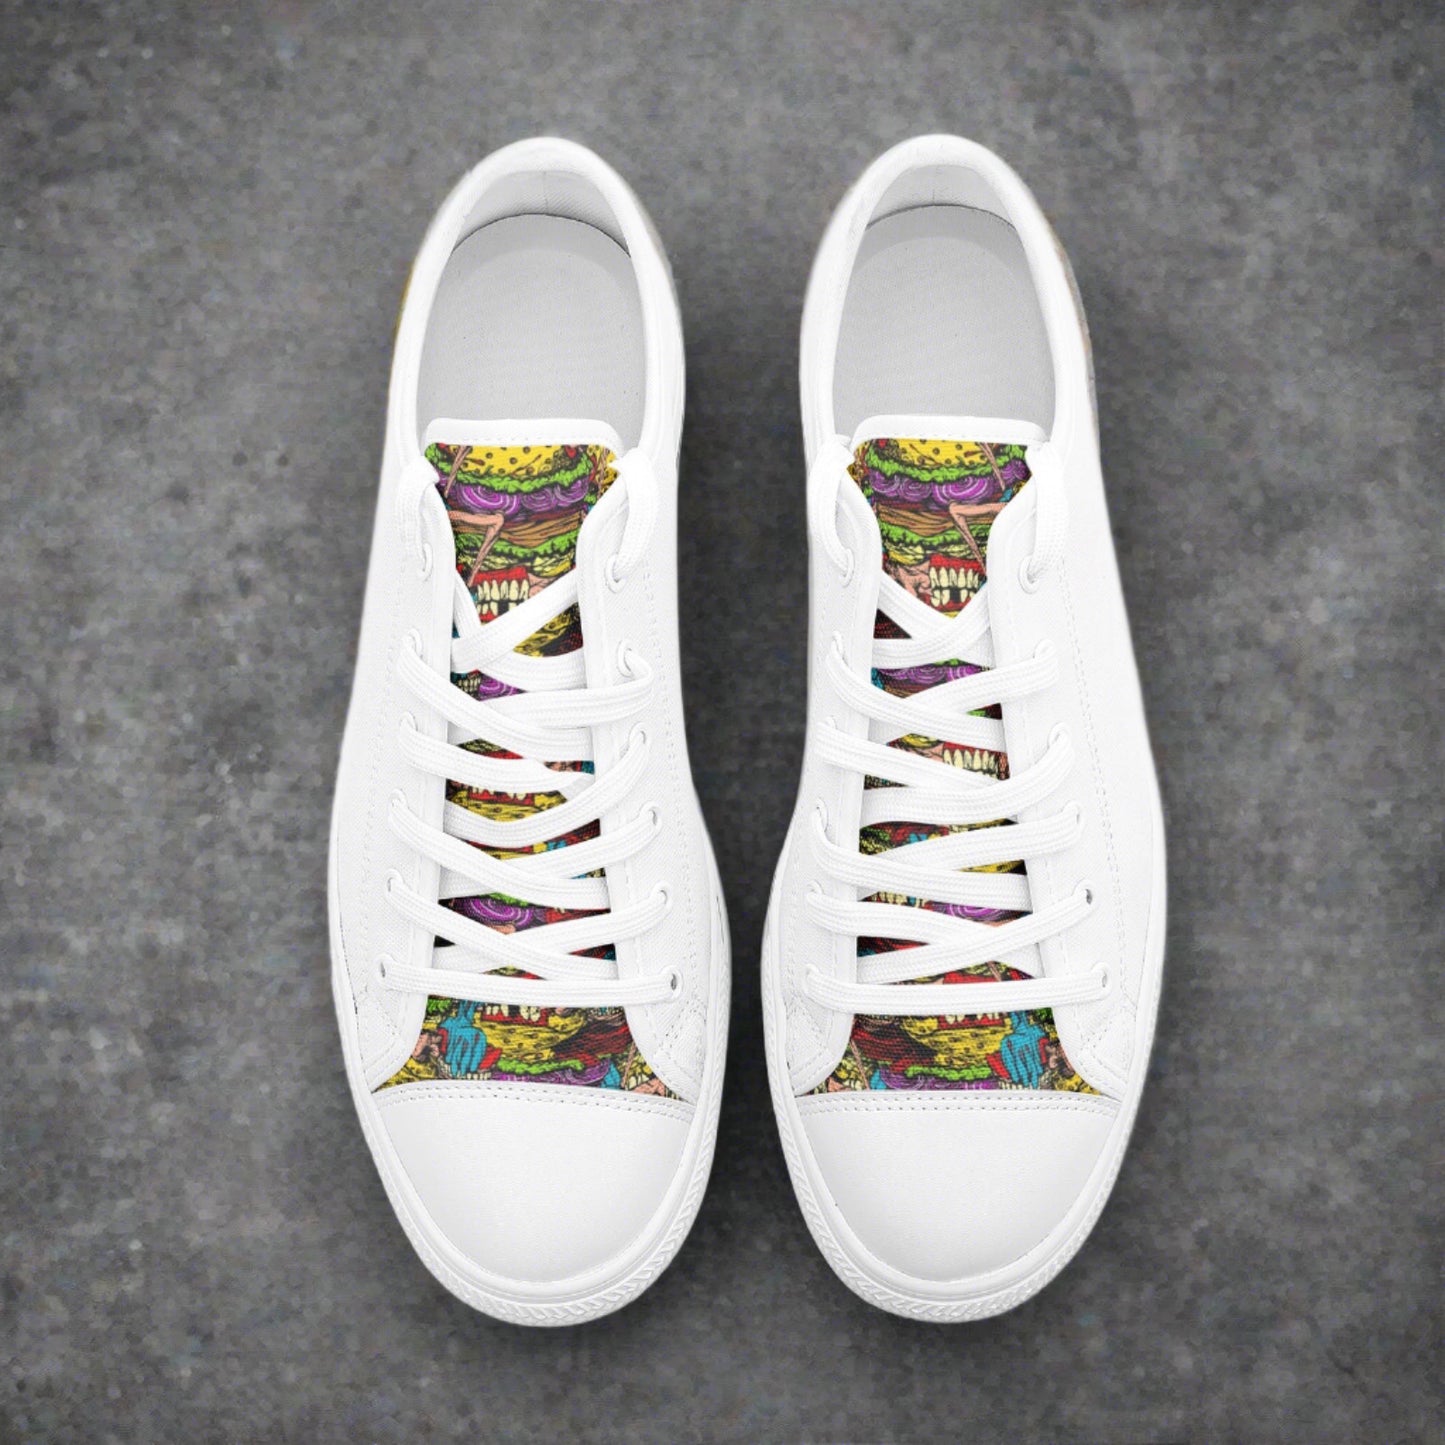 Freaky Shoes® Низкие парусиновые туфли унисекс с художественным принтом в стиле фристайл